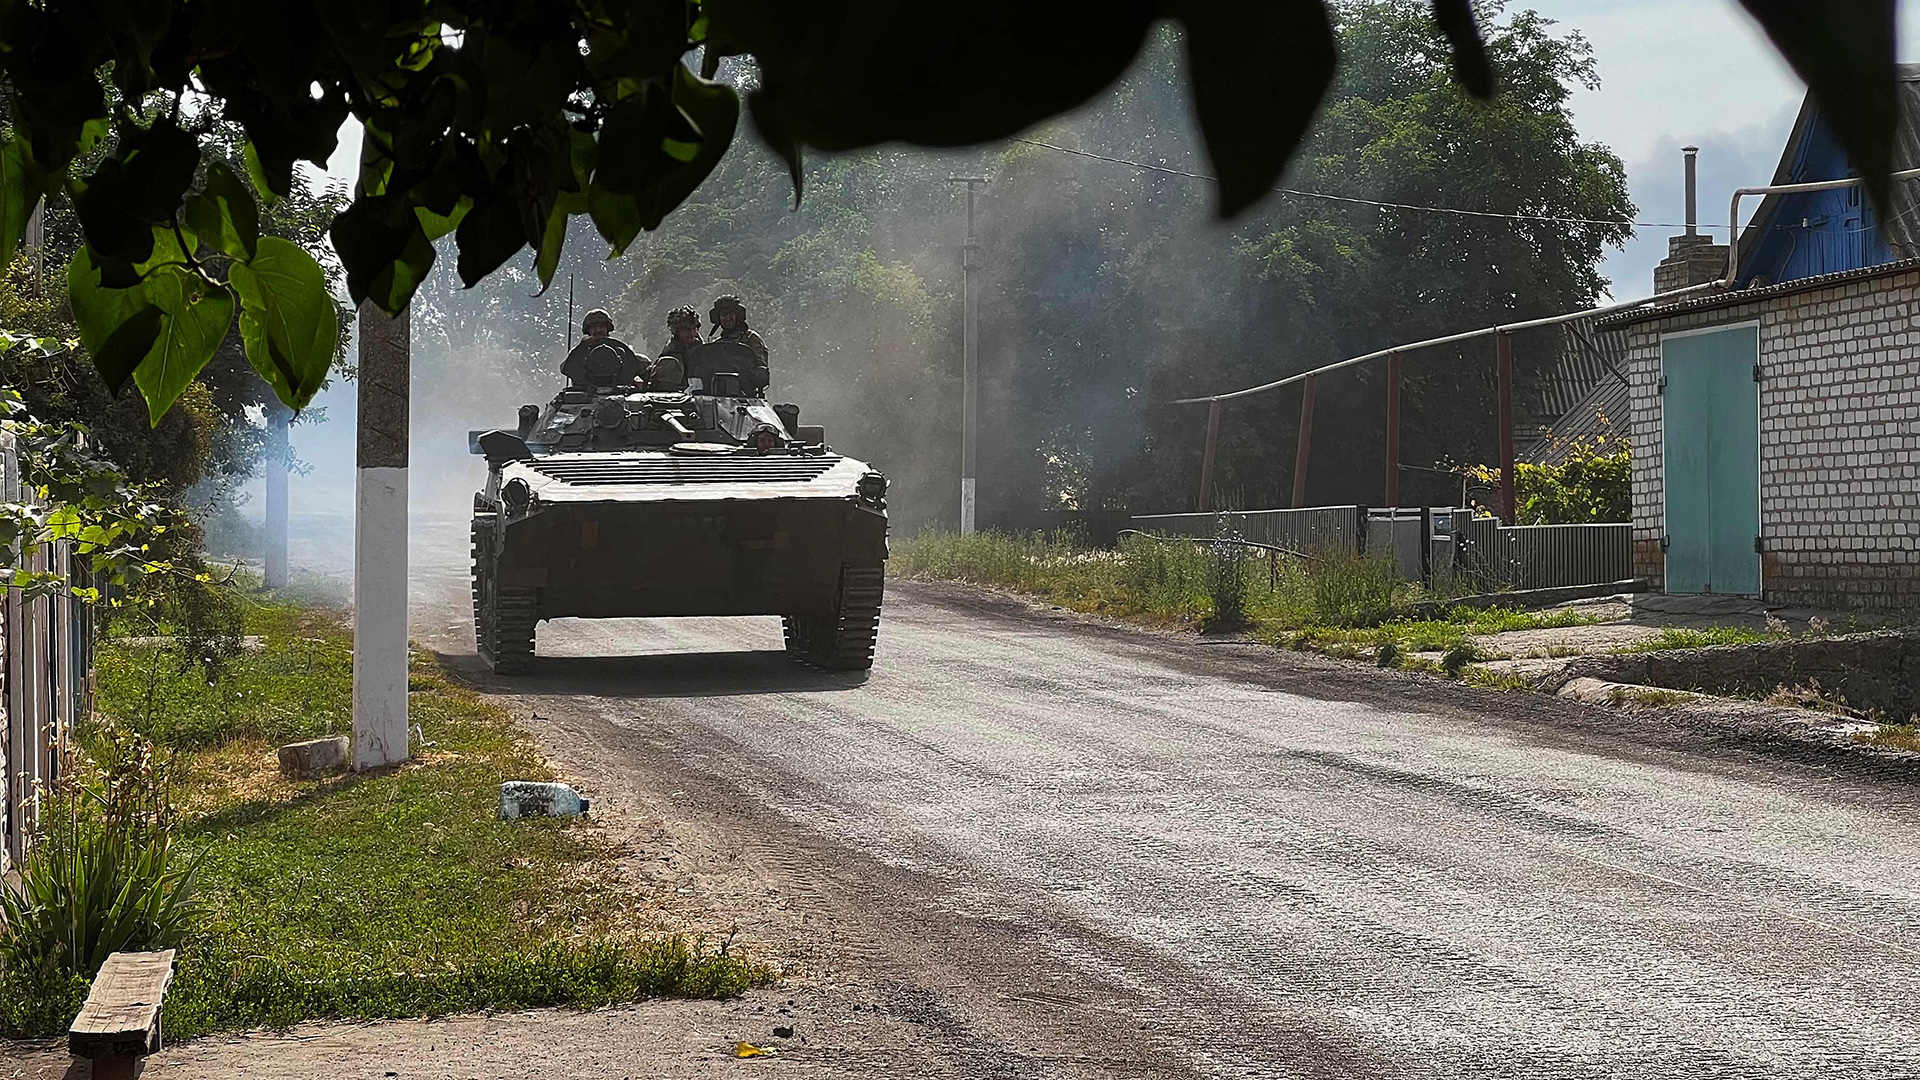 Ukrainische Soldaten fahren in einem gepanzerten Fahrzeug auf der Hauptstraße nach Lyssytschansk in der ostukrainischen Region Donbass.